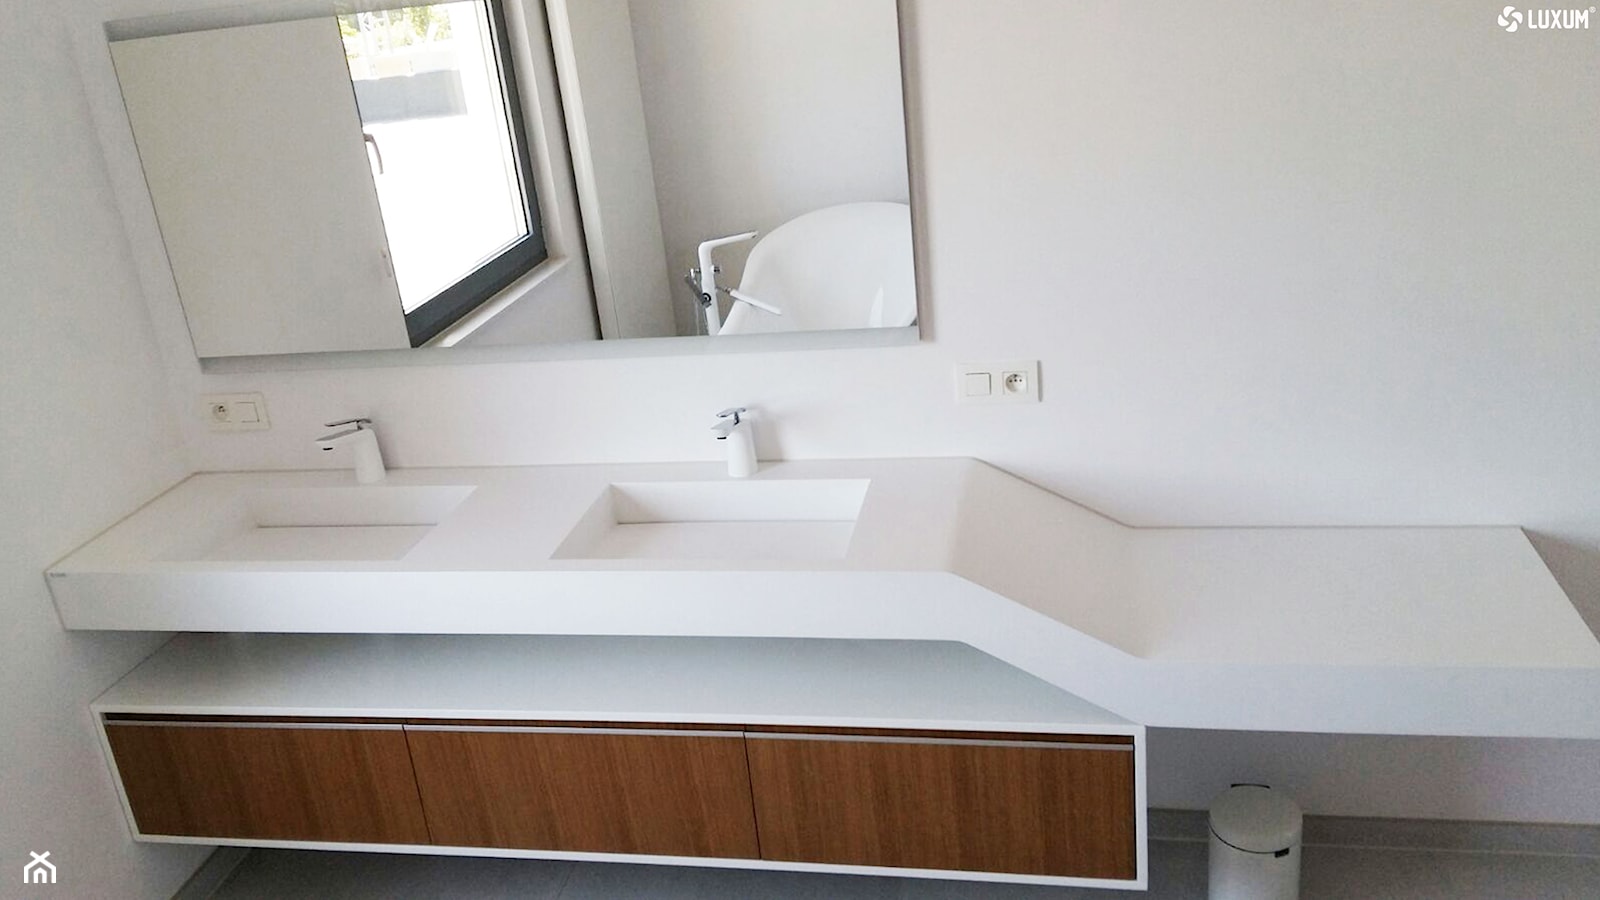 Podwójna geometryczna umywalka z blatem i fornirowaną szafką. - Łazienka, styl nowoczesny - zdjęcie od Luxum - Homebook